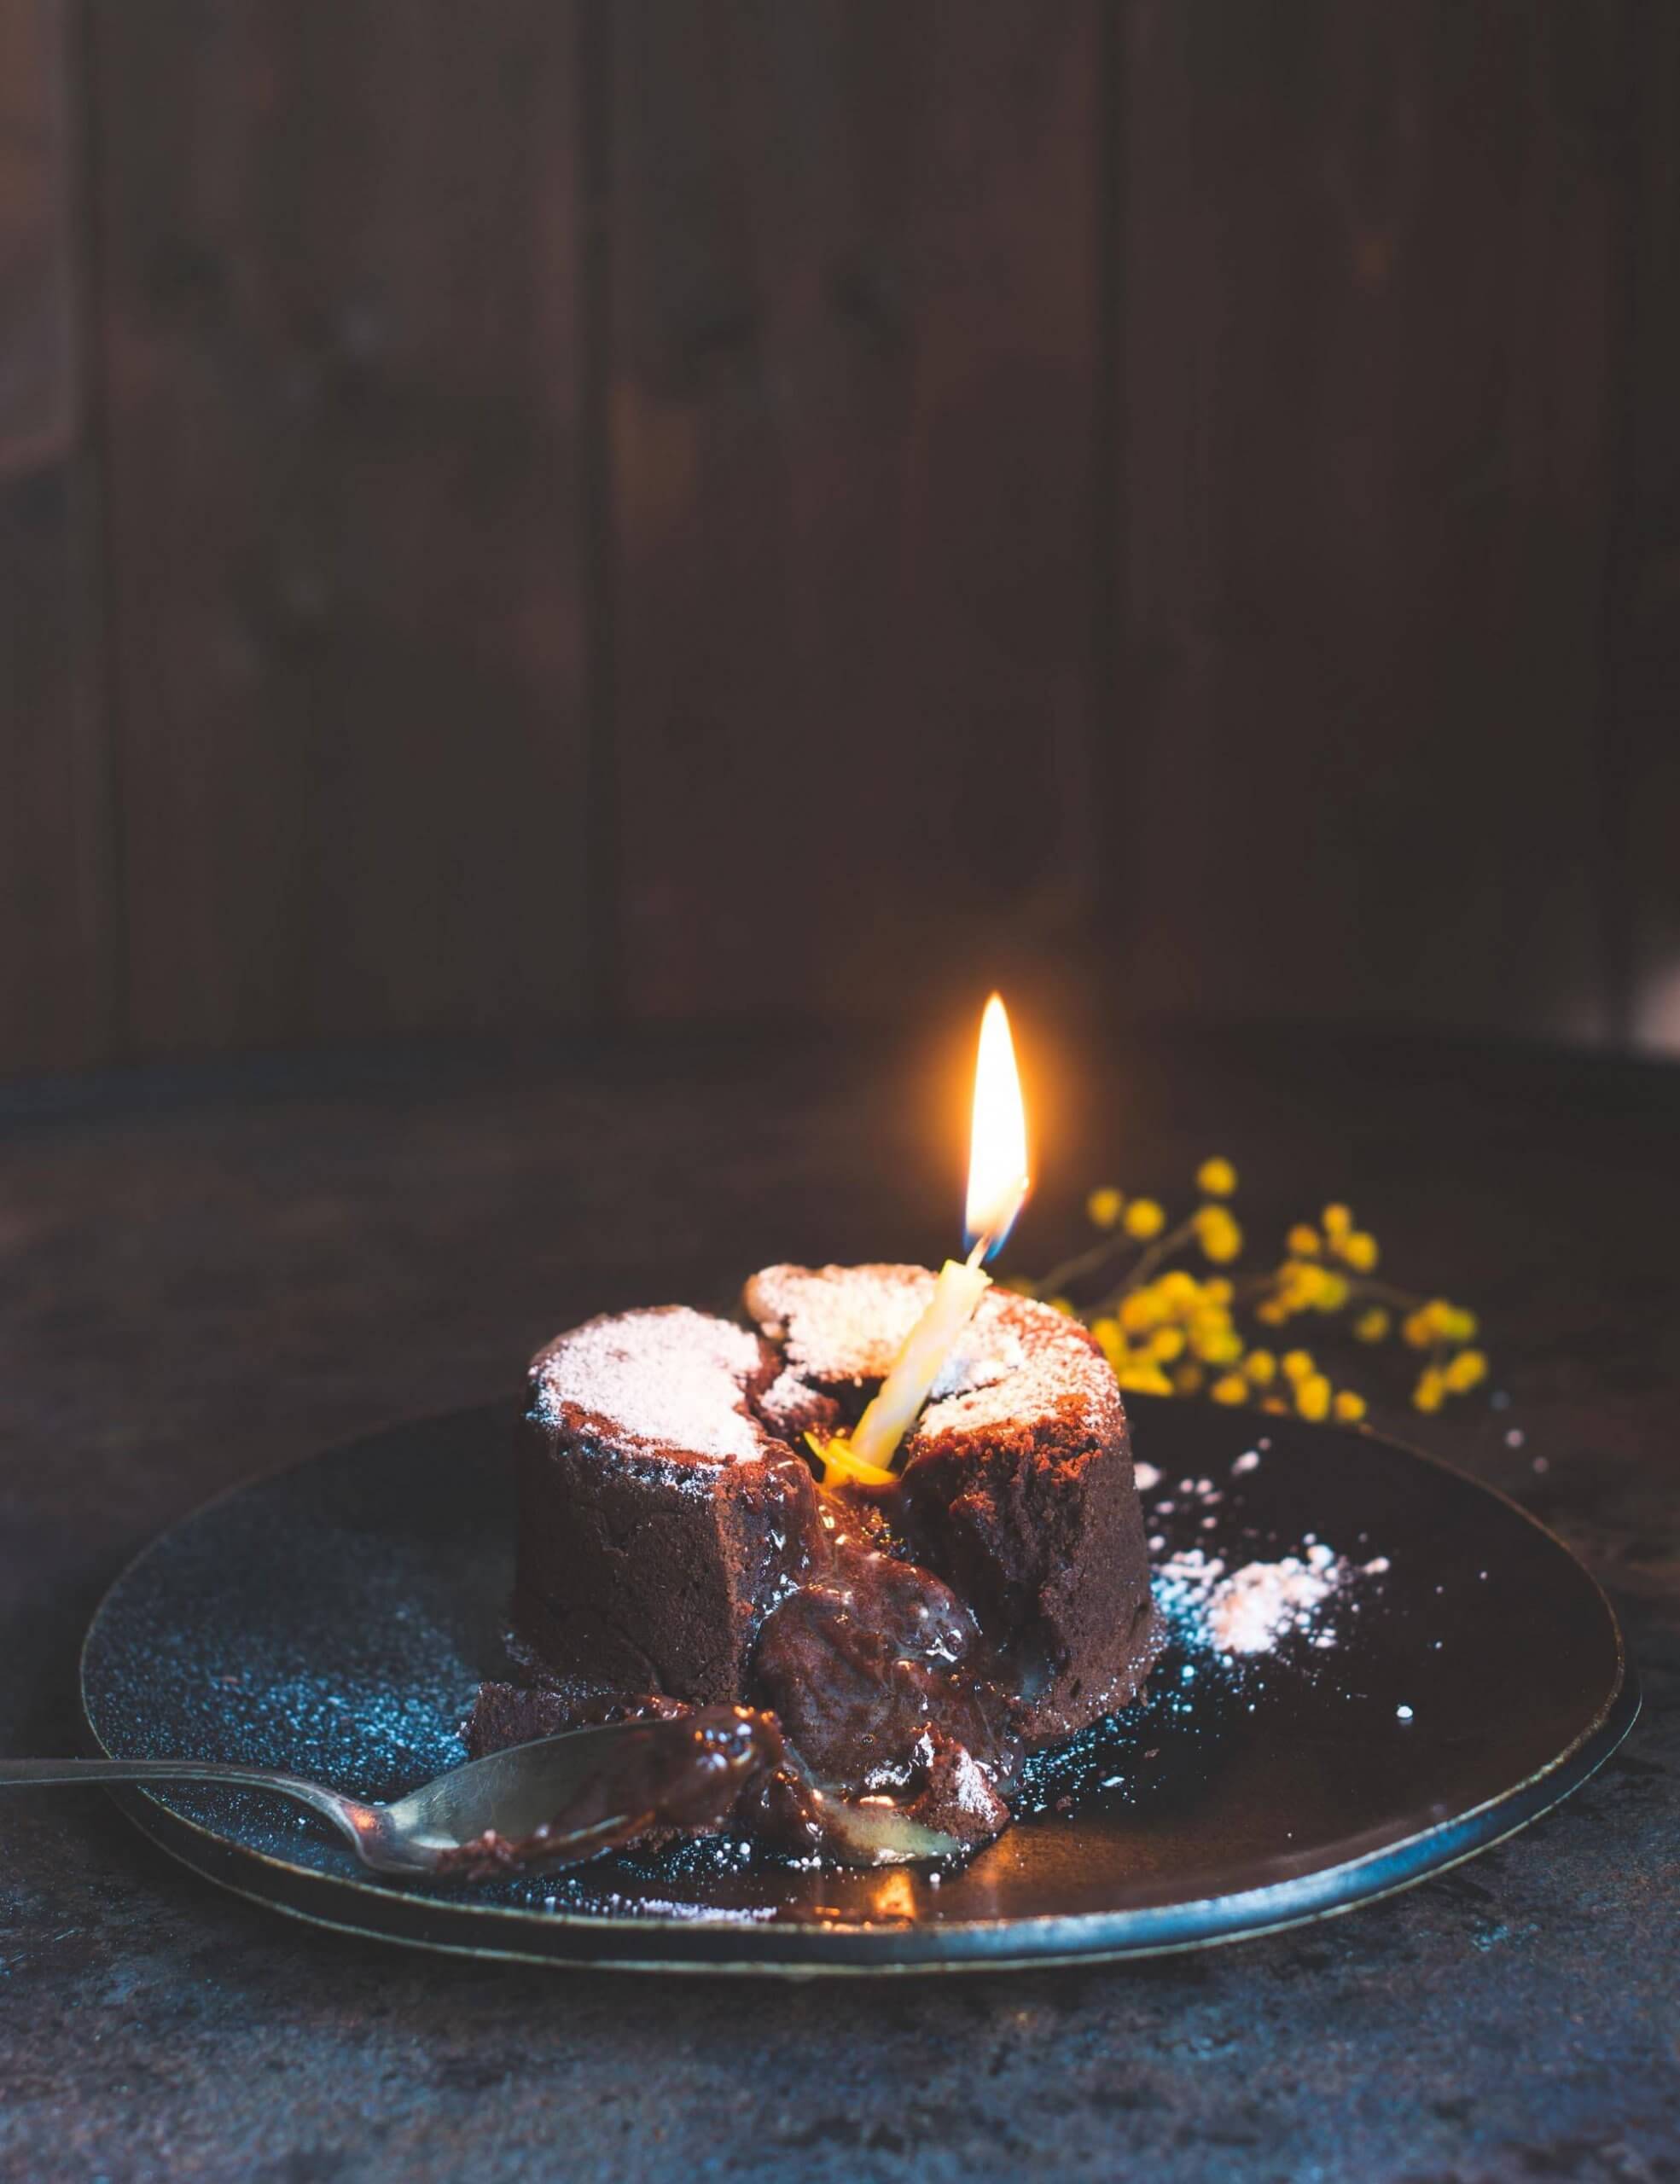 Wir feiern Geburtstag mit Gast Nr. 3: Simone von S-Küche und ihrem Molten Lava Cake – Trunkener Schokokuchen mit flüssigem Kern